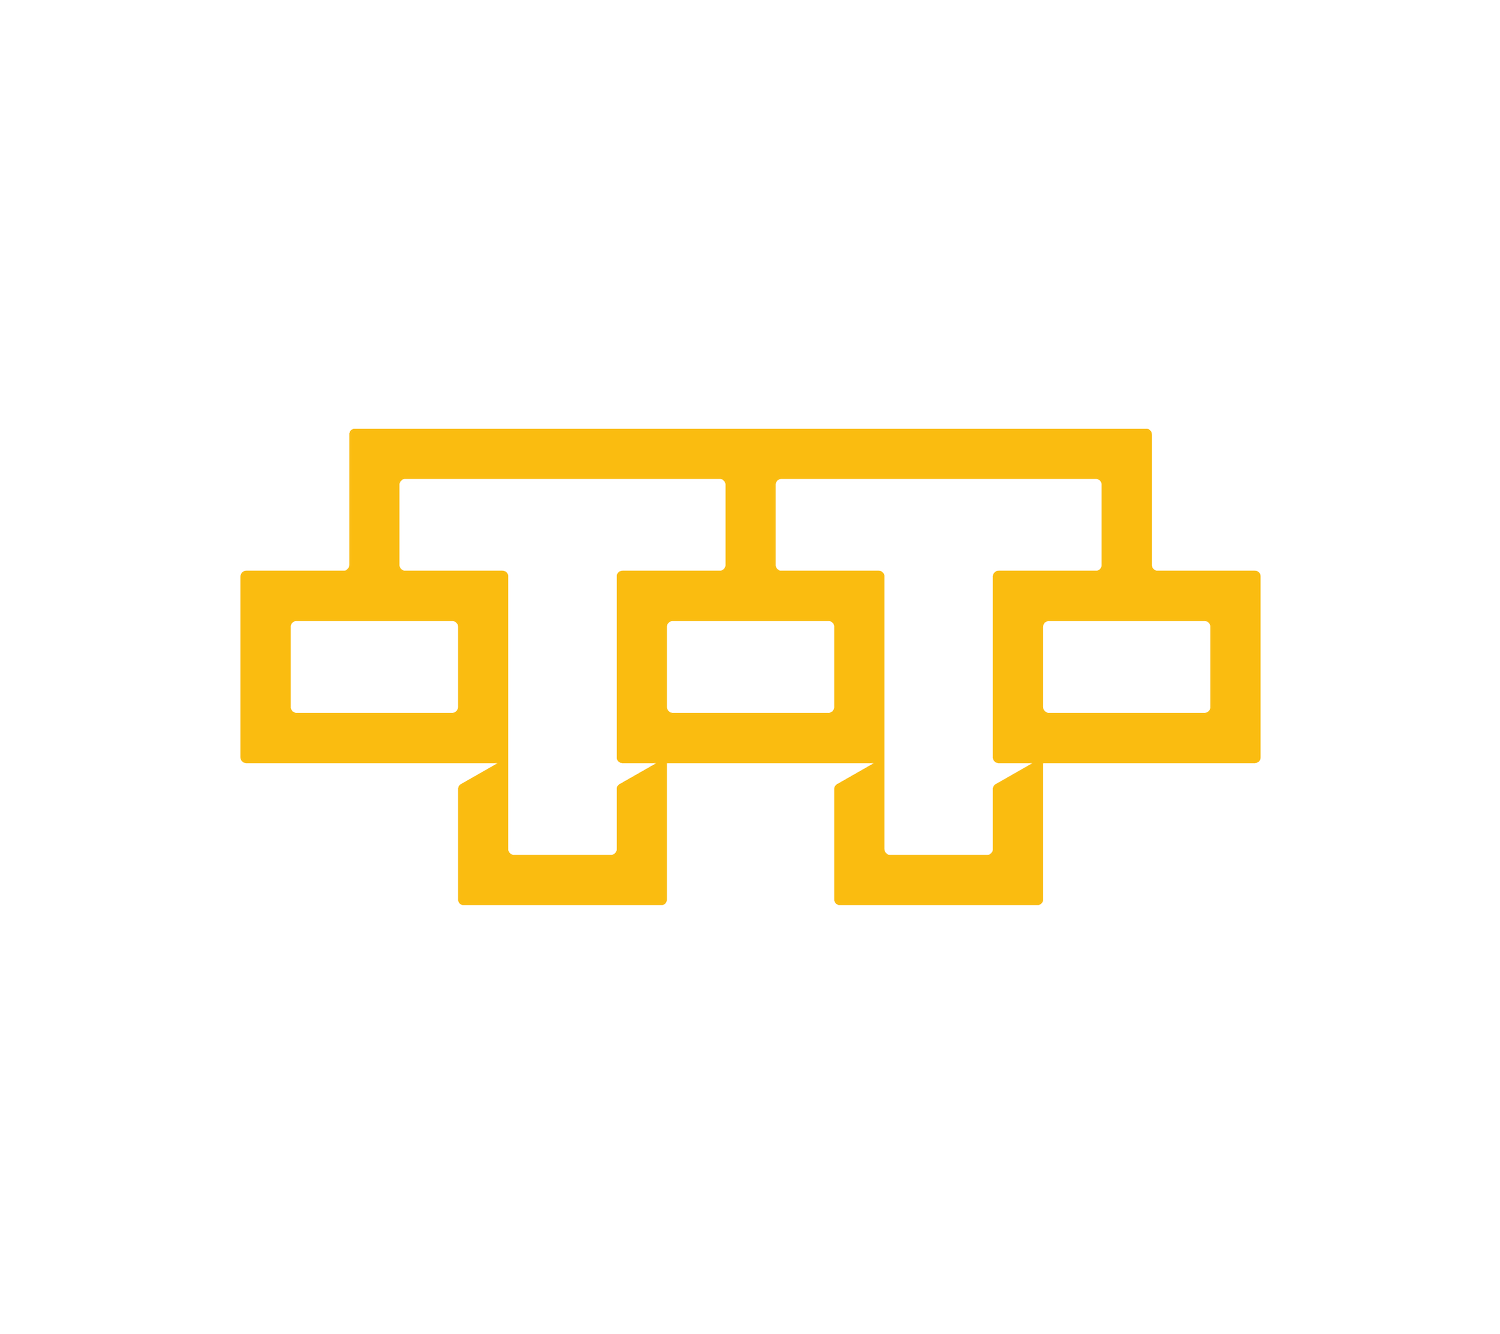 Taylored Technology Inc